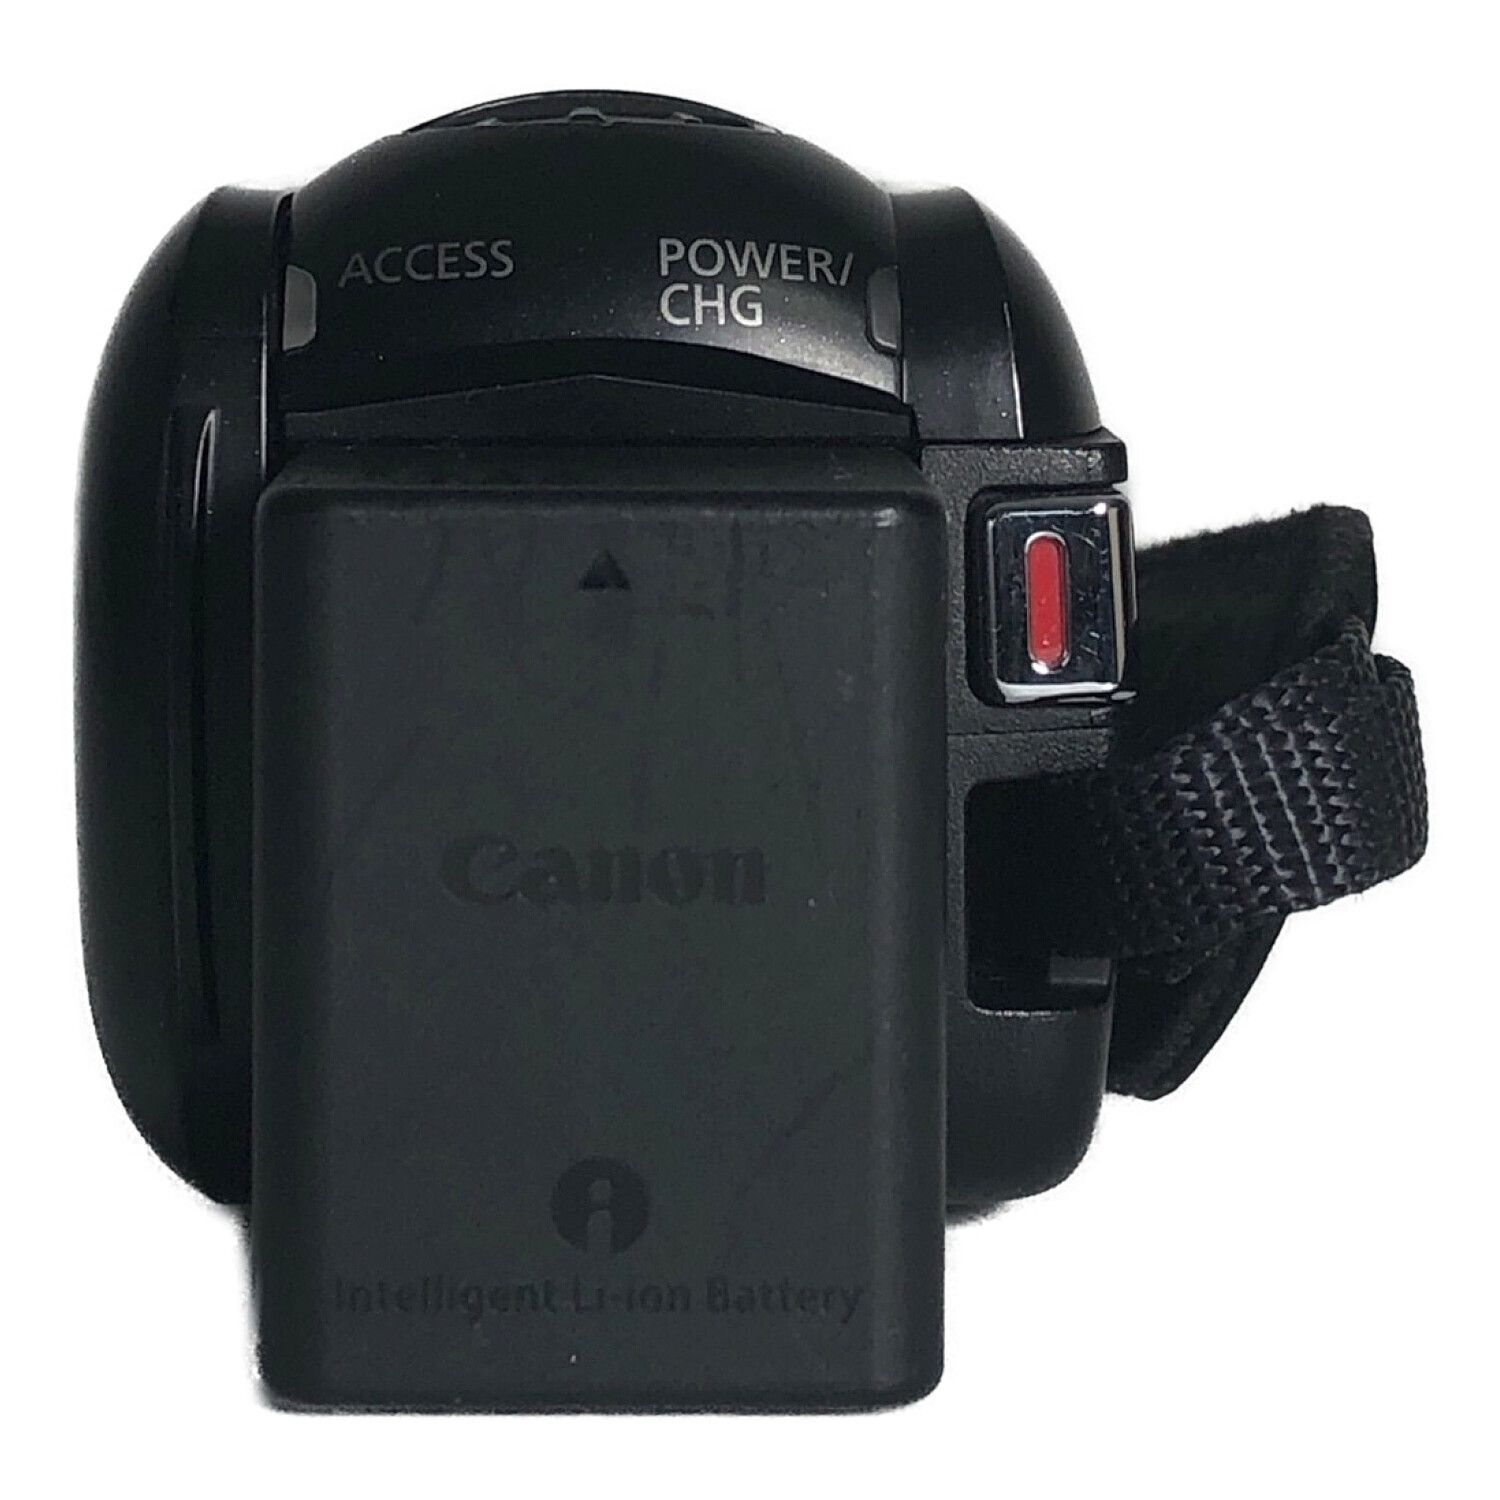 CANON (キャノン) HDビデオカメラ iVIS HF R82 2018年製 328万画素 